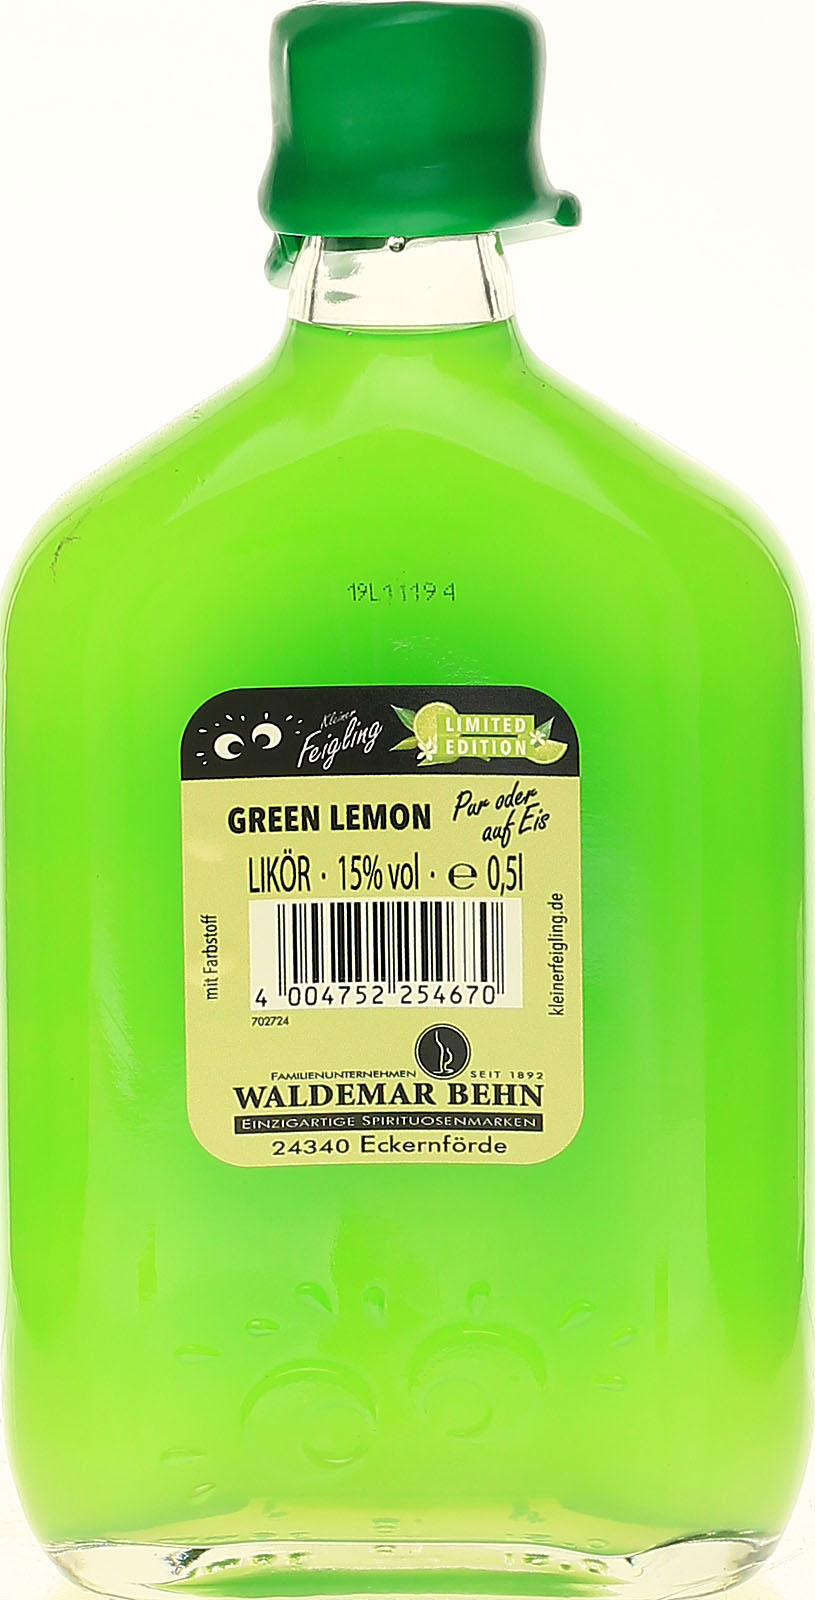 Kleiner Feigling Green Lemon günstig und schnell bei un